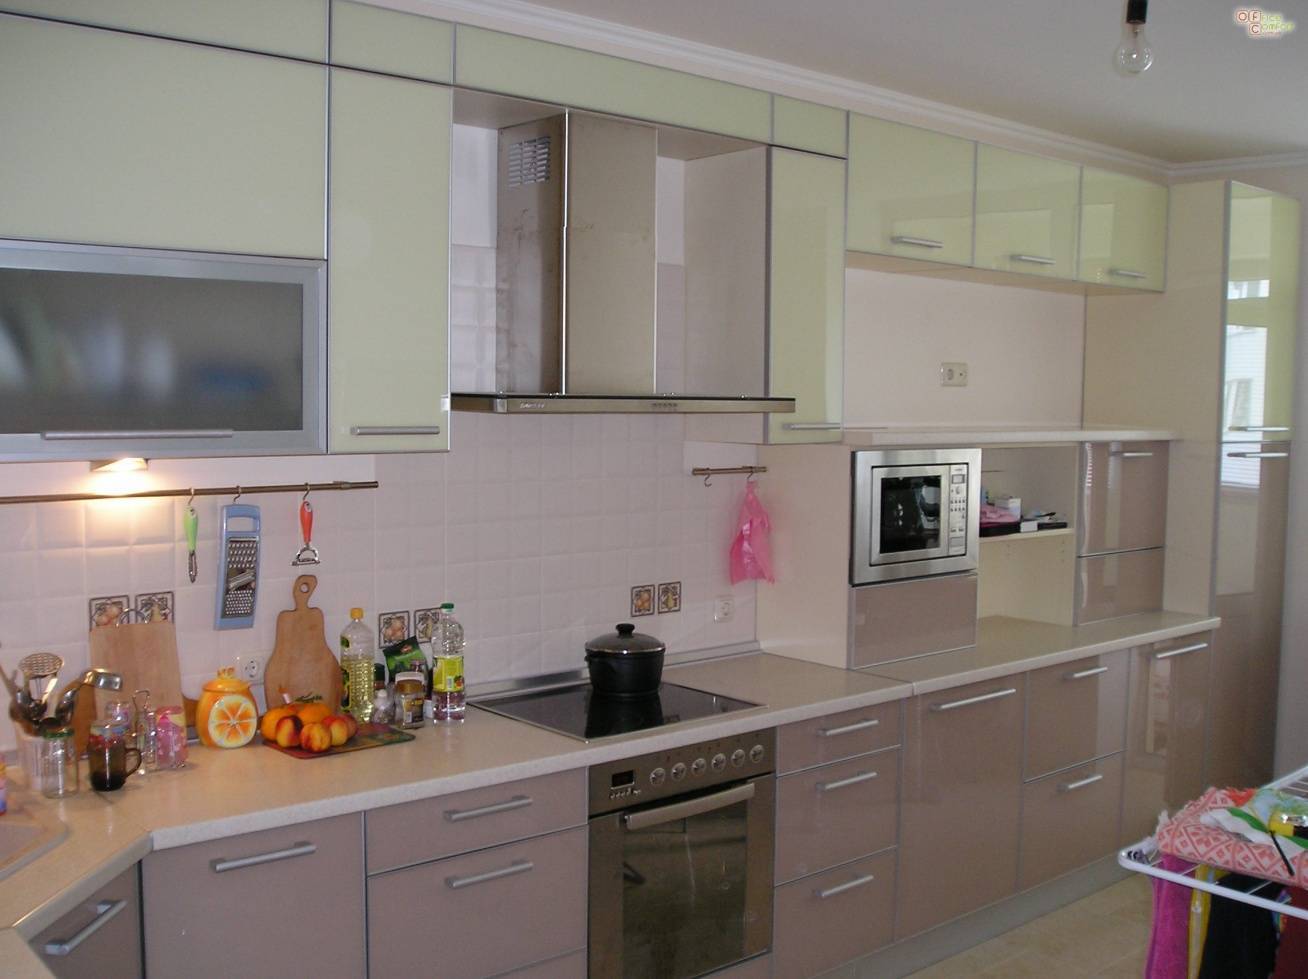 Алюминиевые фасады - алюминиевый профиль для кухонных фасадов, кухни: стекло, пластик в алюминиевой рамке (фото)